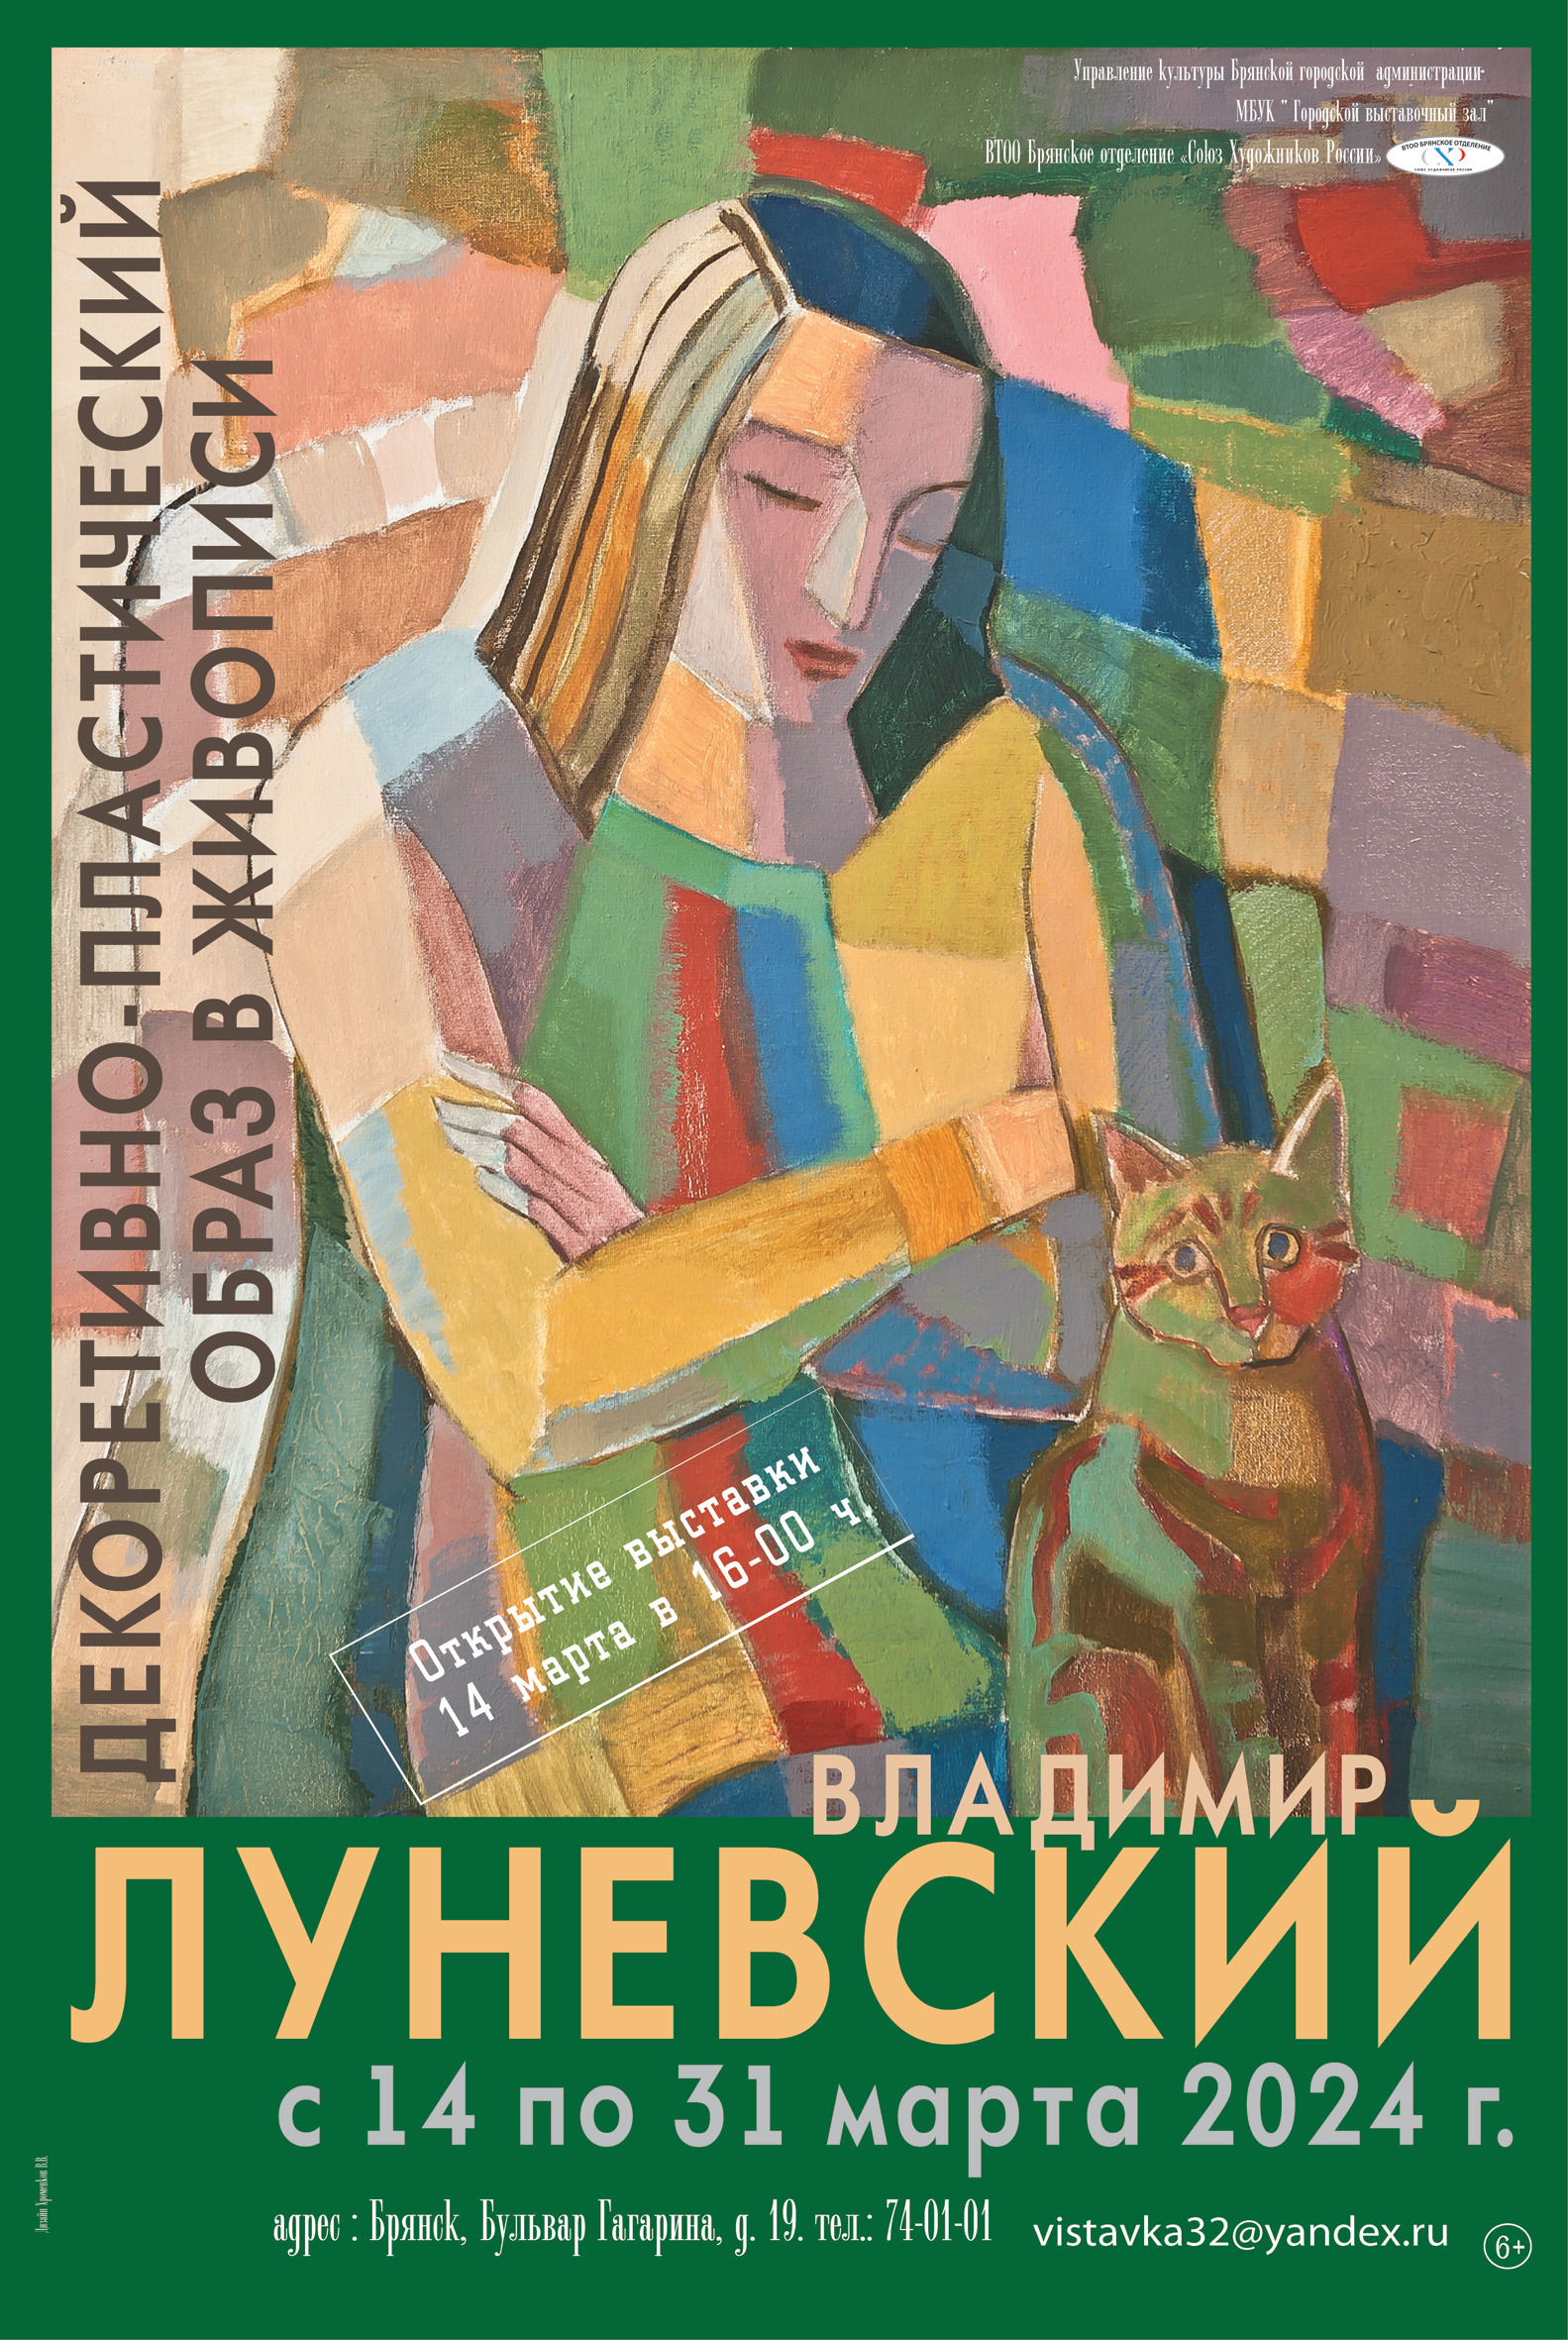 Приглашаем на открытие персональной юбилейной выставки Луневского В.М. «Декоративно-пластический образ в живописи»